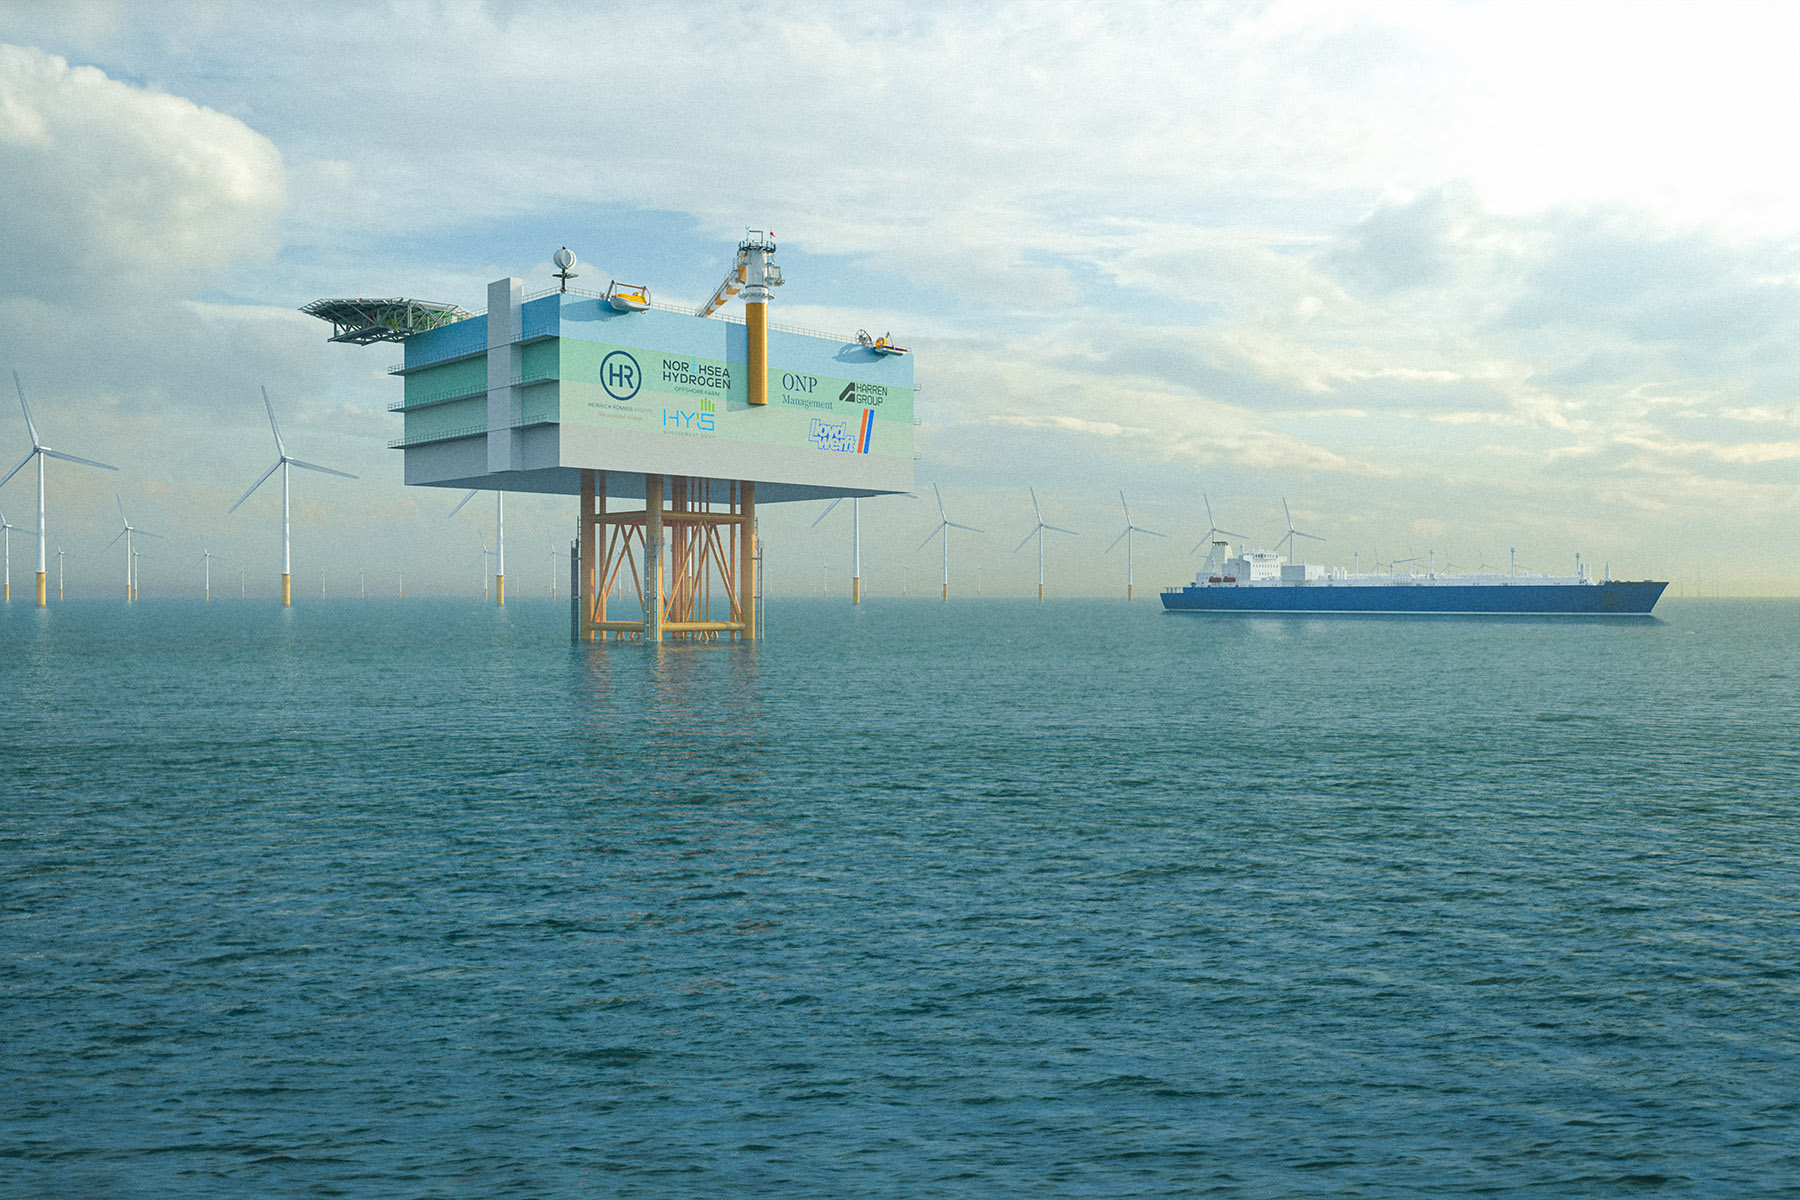 Ein besonders ambitioniertes Vorhaben: Wasserstoff direkt auf hoher See erzeugen, Bild: Illustration/NorthH2